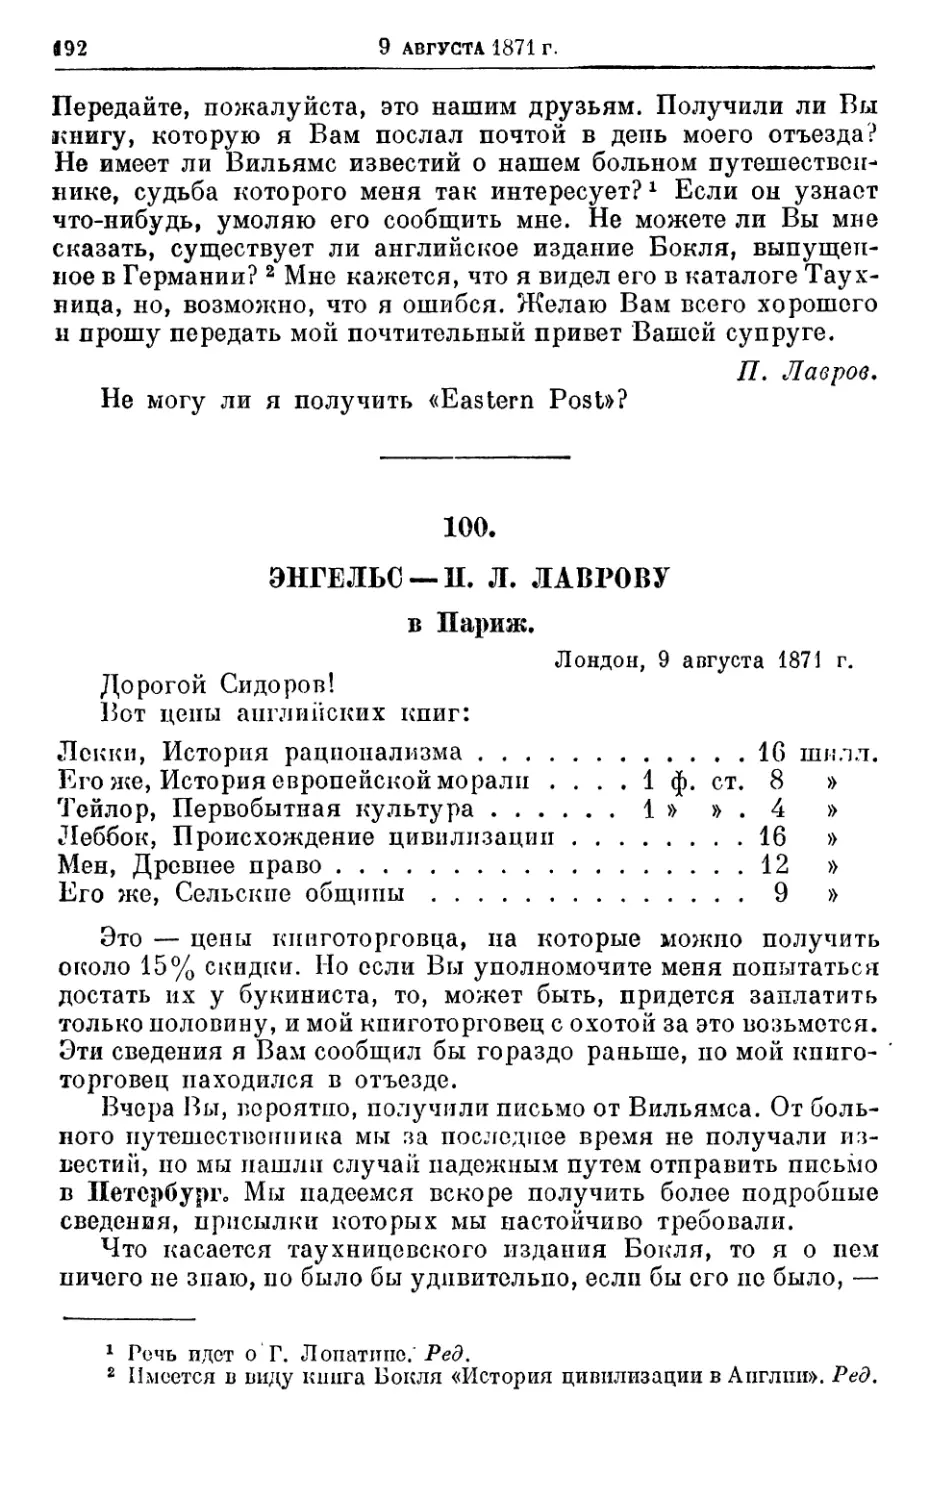 100. Энгельс — П. Л. Лаврову, 9 августа 1871г